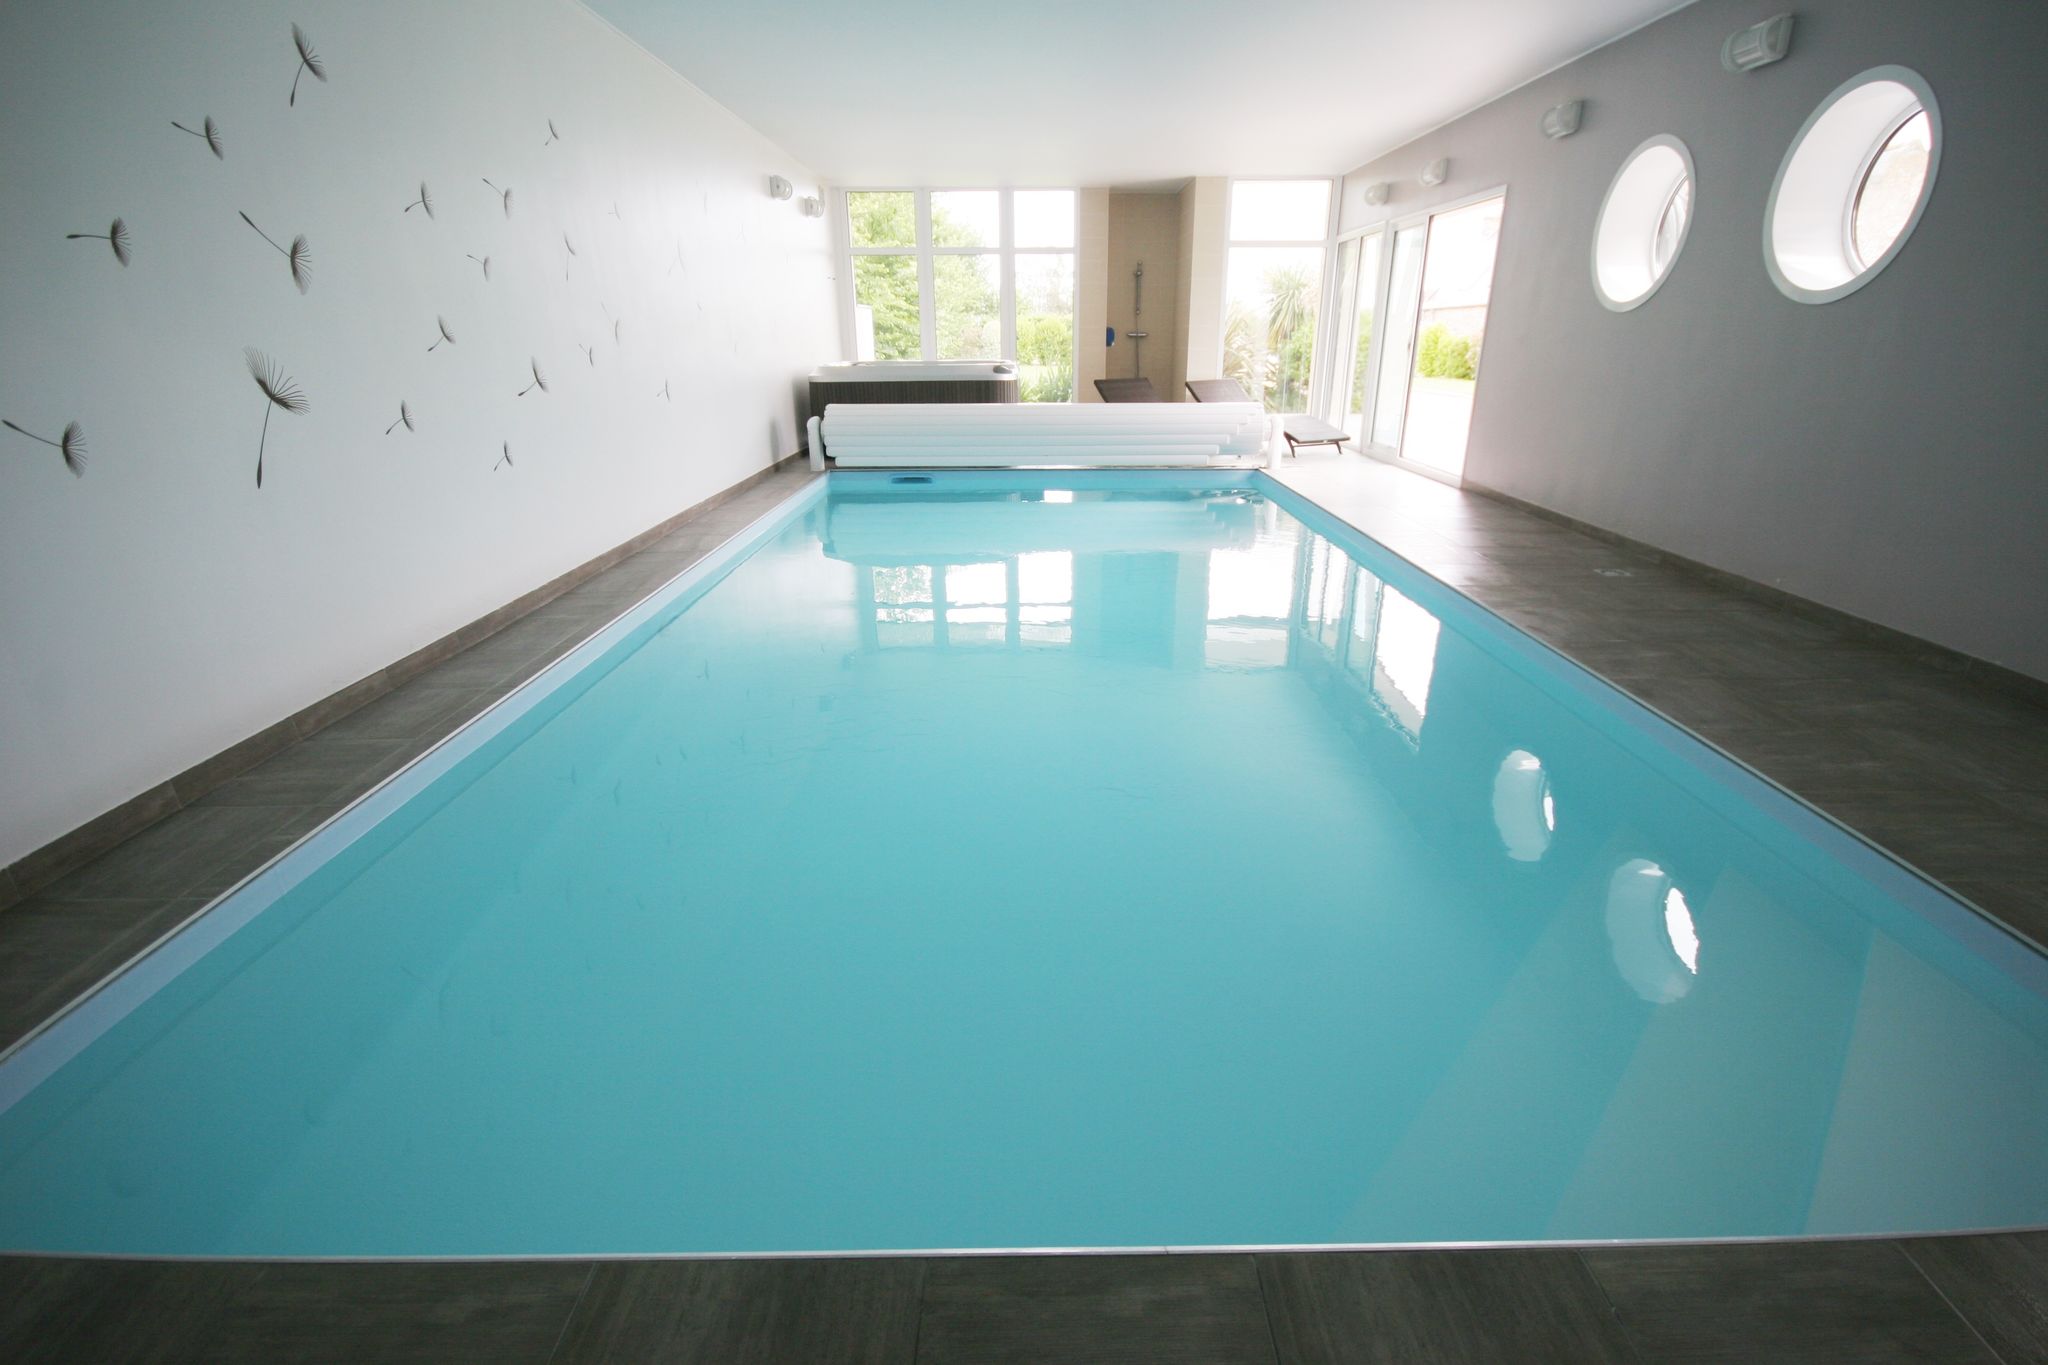 Mooie moderne villa met binnenzwembad, jacuzzi en een luxe kookeiland